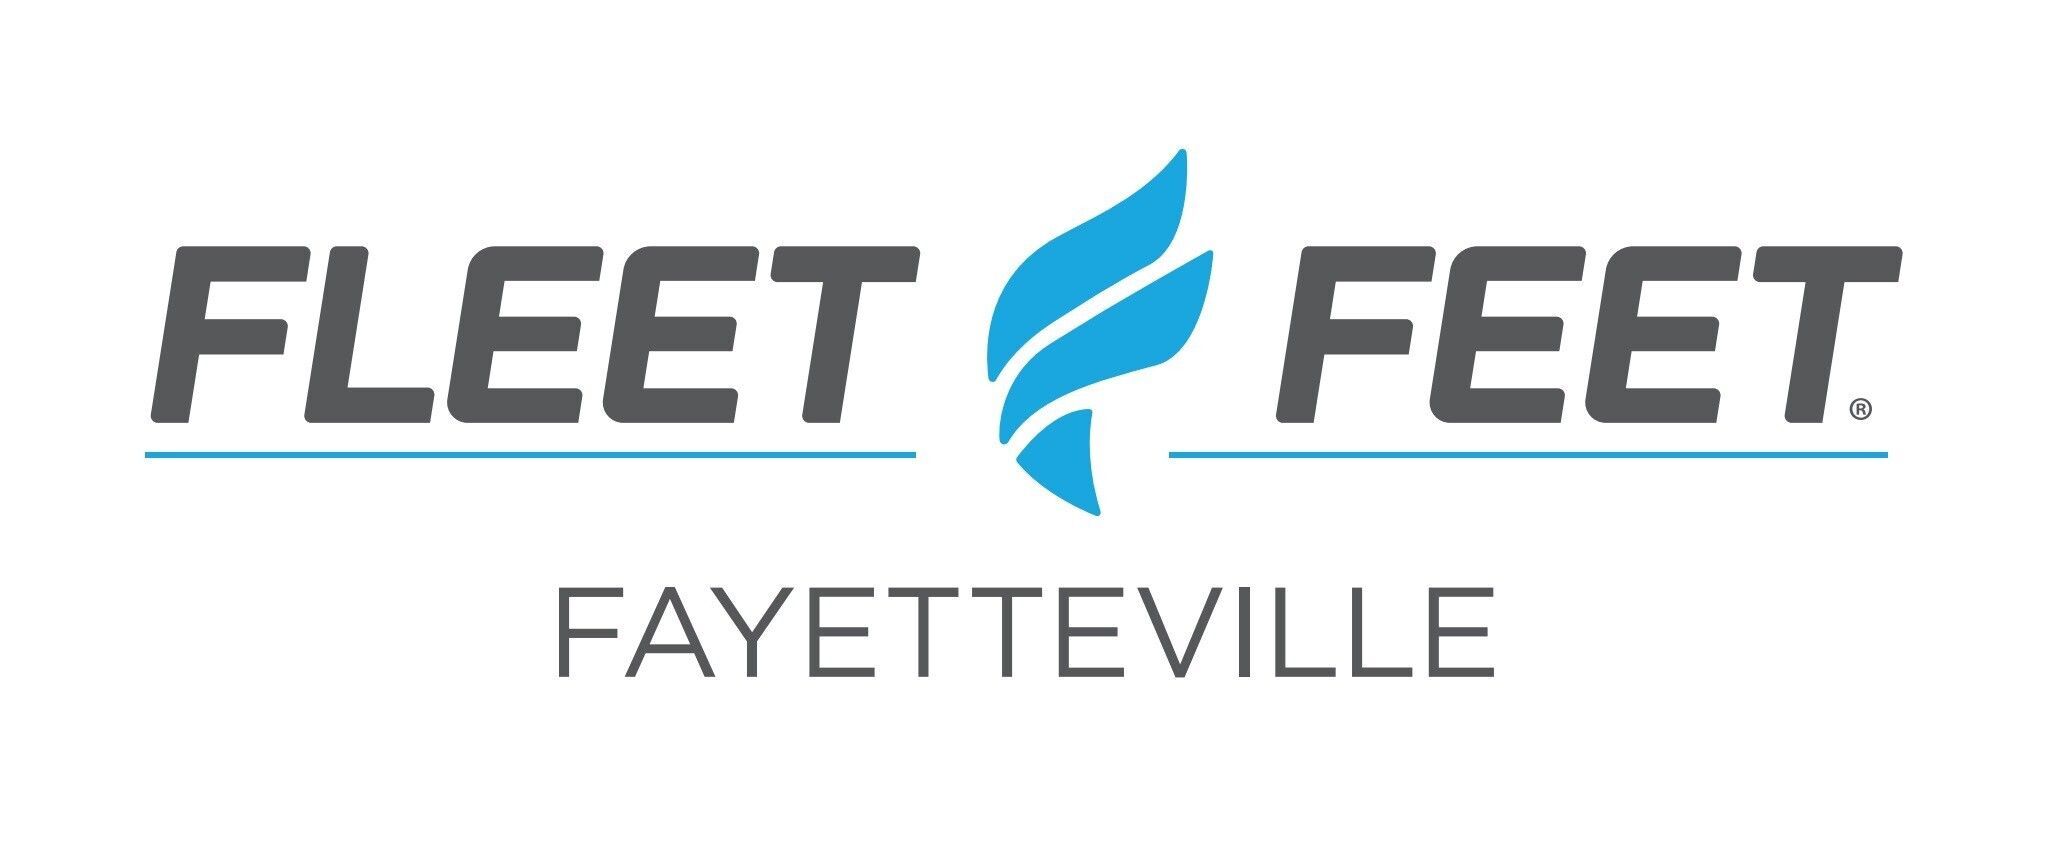 Fleet Feet Fayetteville